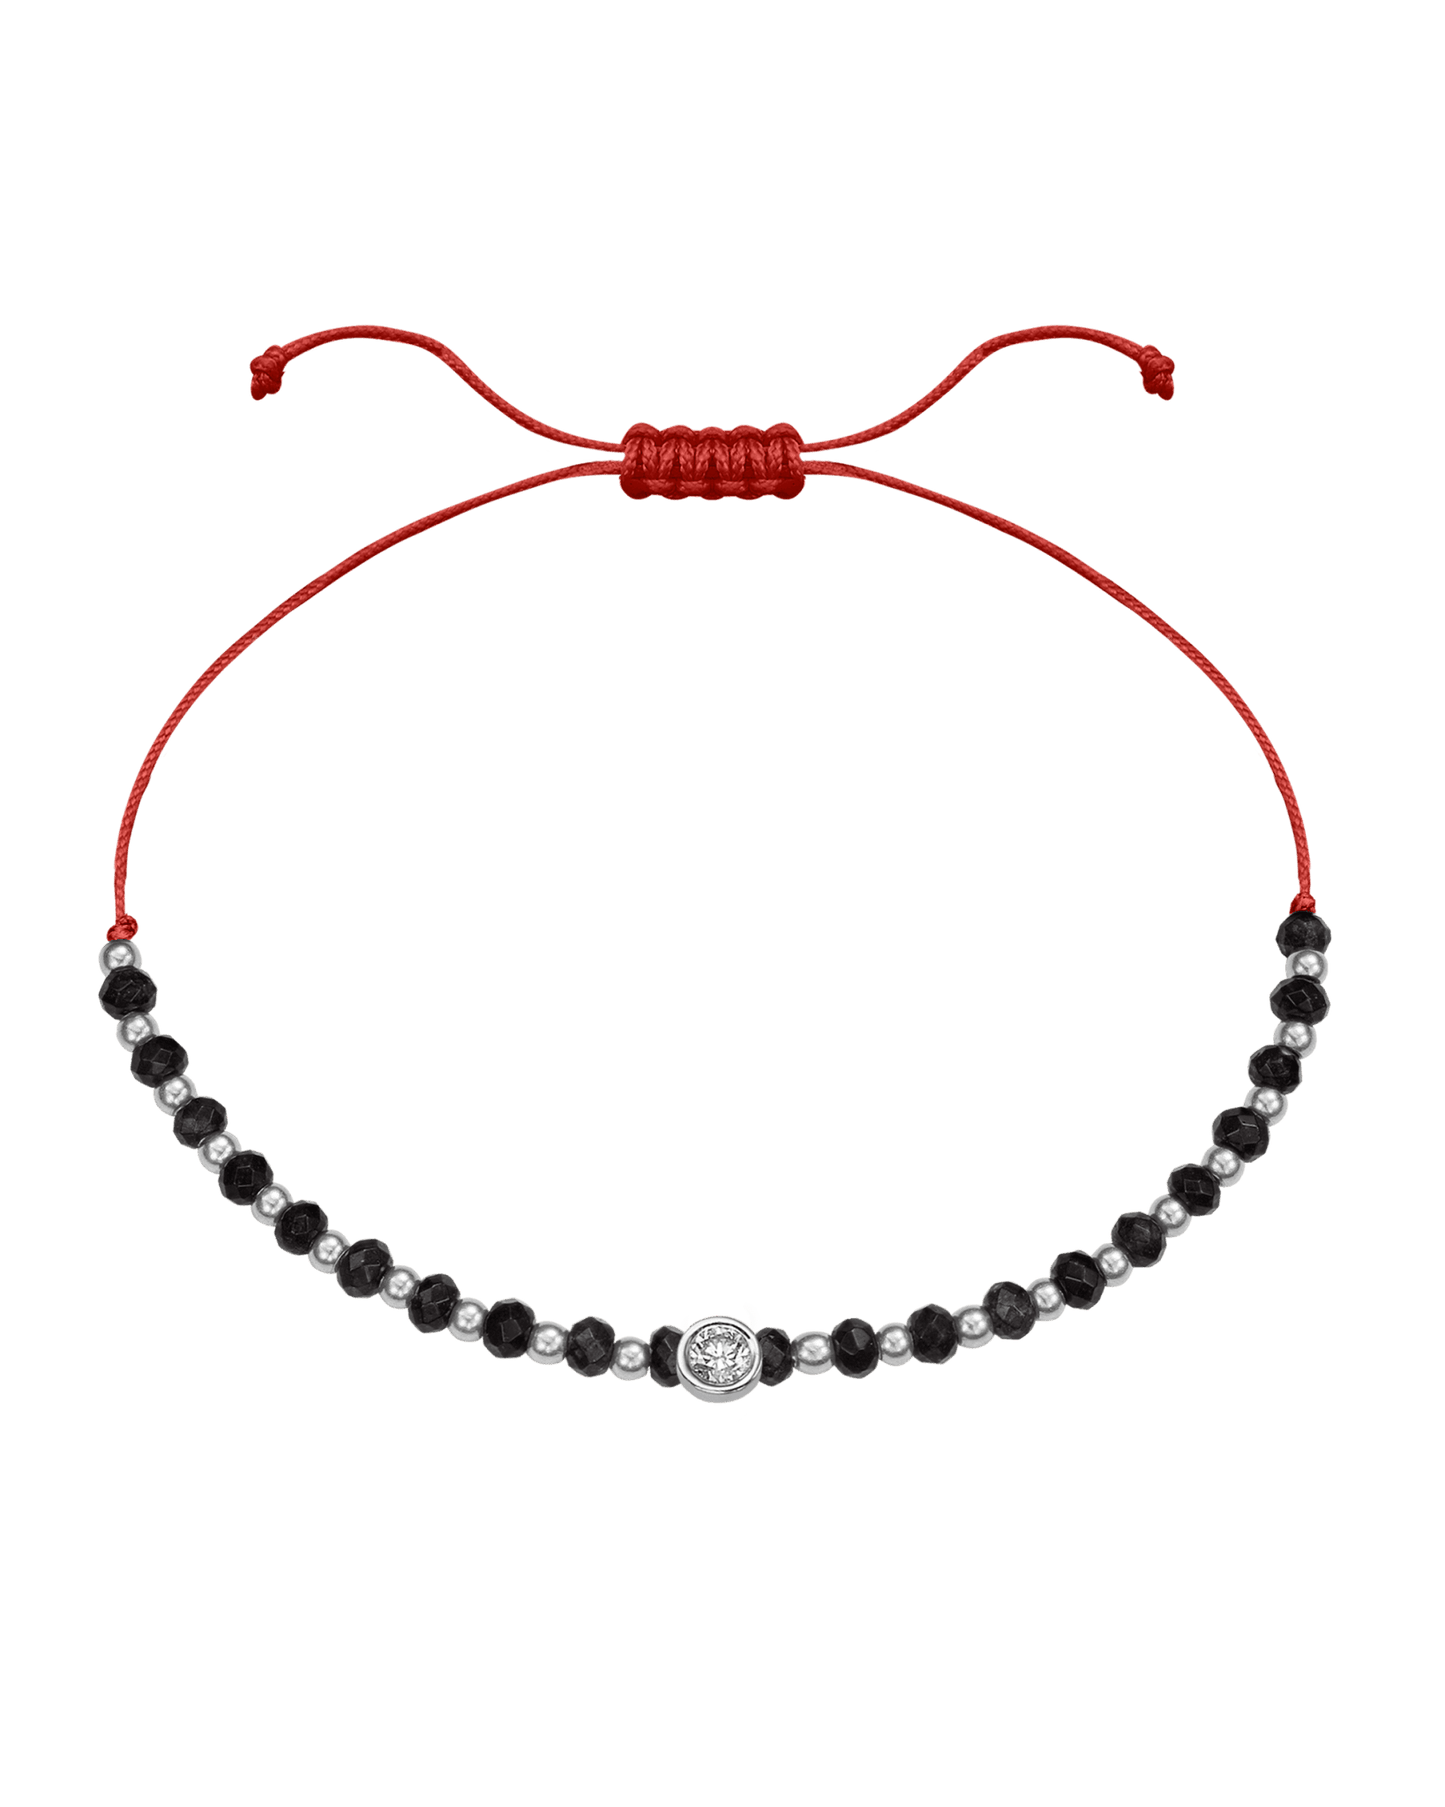 Black Onyx Gemstone String of Love Bracelet for Protection - 14K White Gold Bracelets 14K Solid Gold Red Large: 0.1ct 